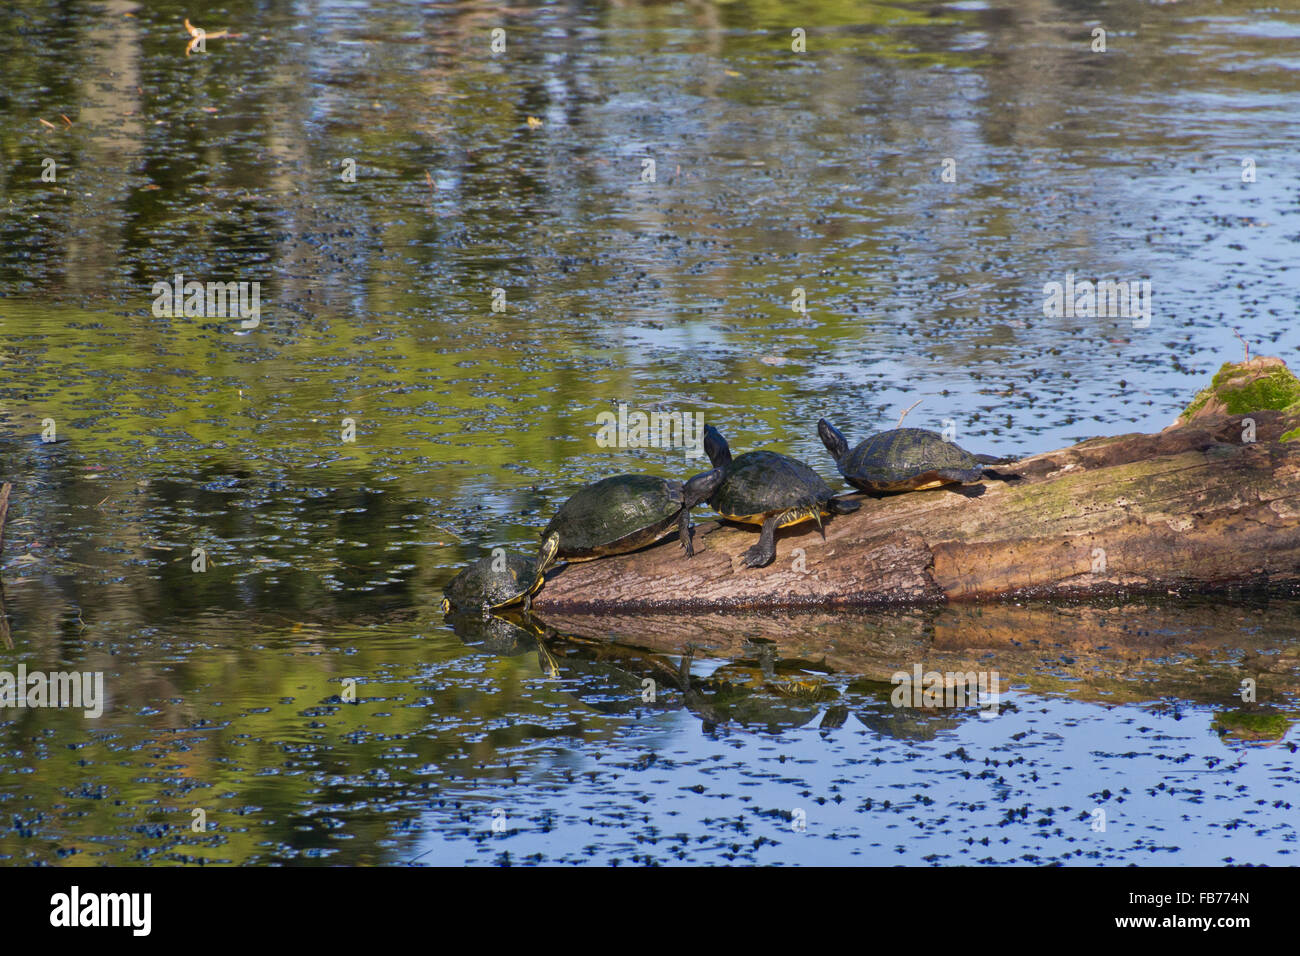 Tres tortugas descansan sobre un estanque reflectante registro mientras la cuarta tira a sí mismo fuera del agua a unirse a ellos Foto de stock